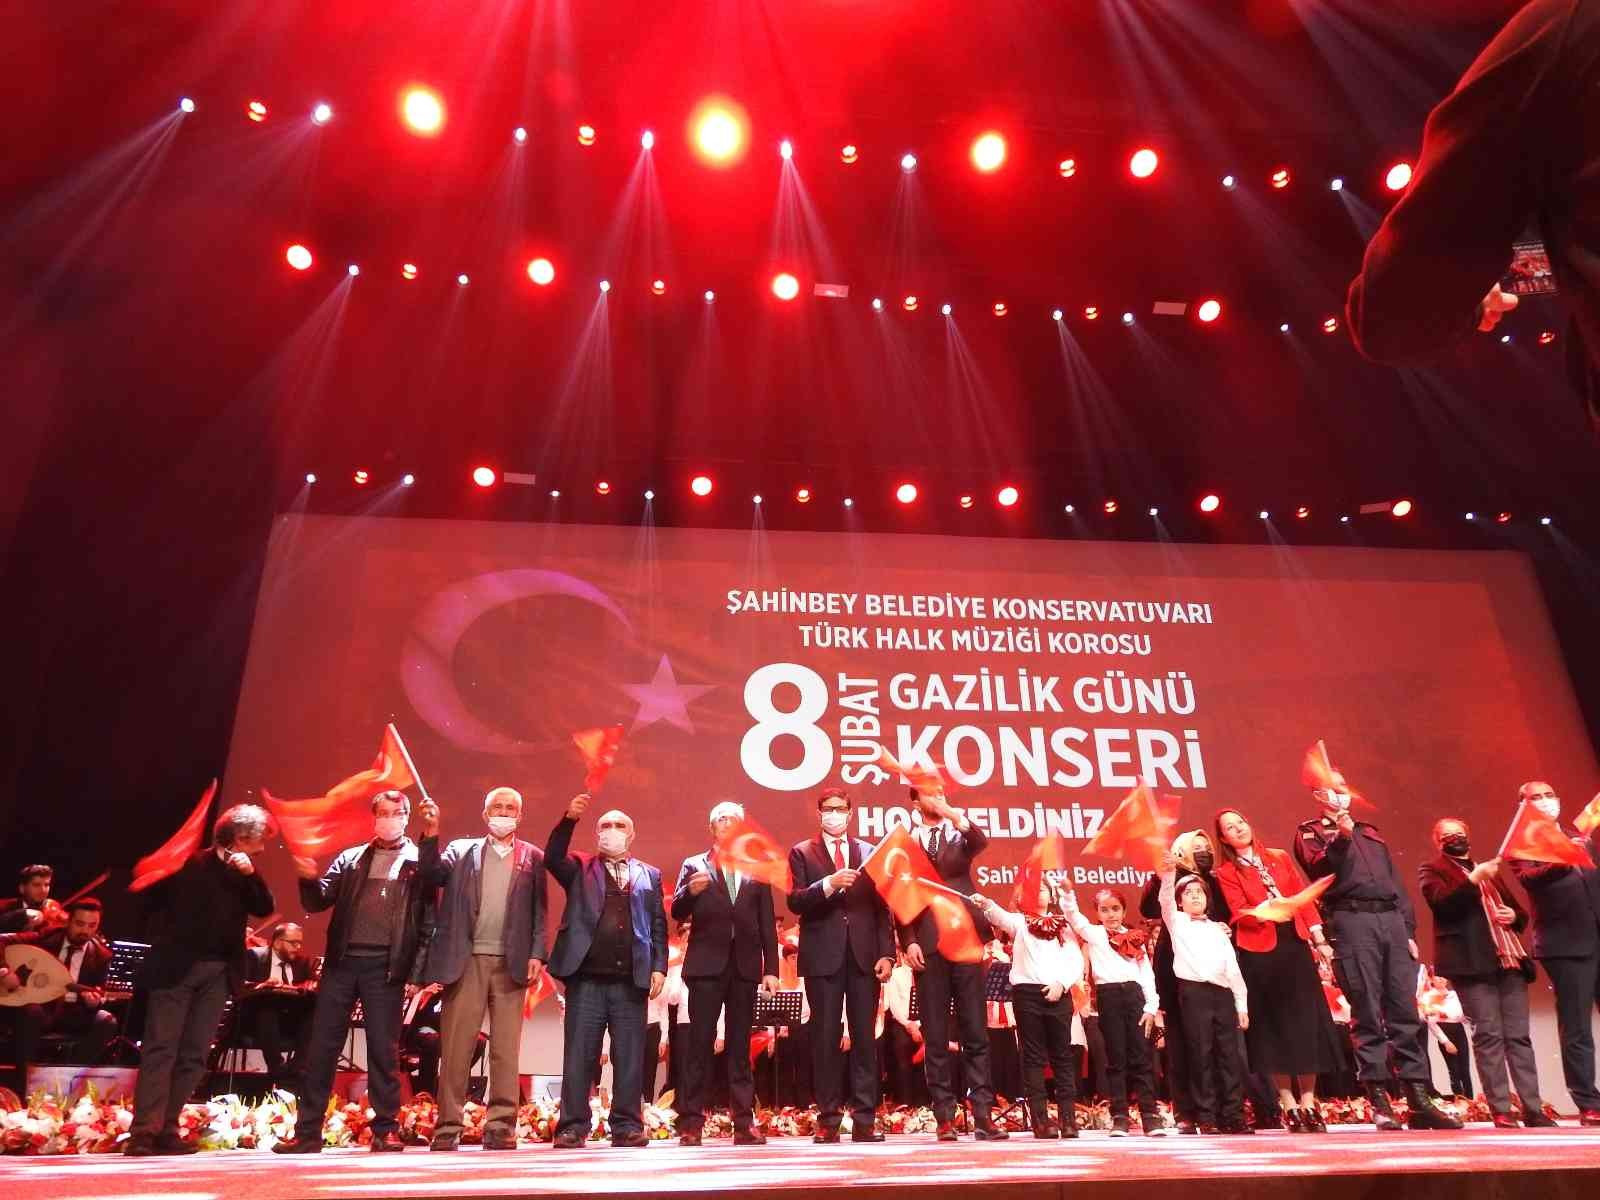 Şahinbey Belediyesi’nden ’Gazilik Günü’ konseri #gaziantep